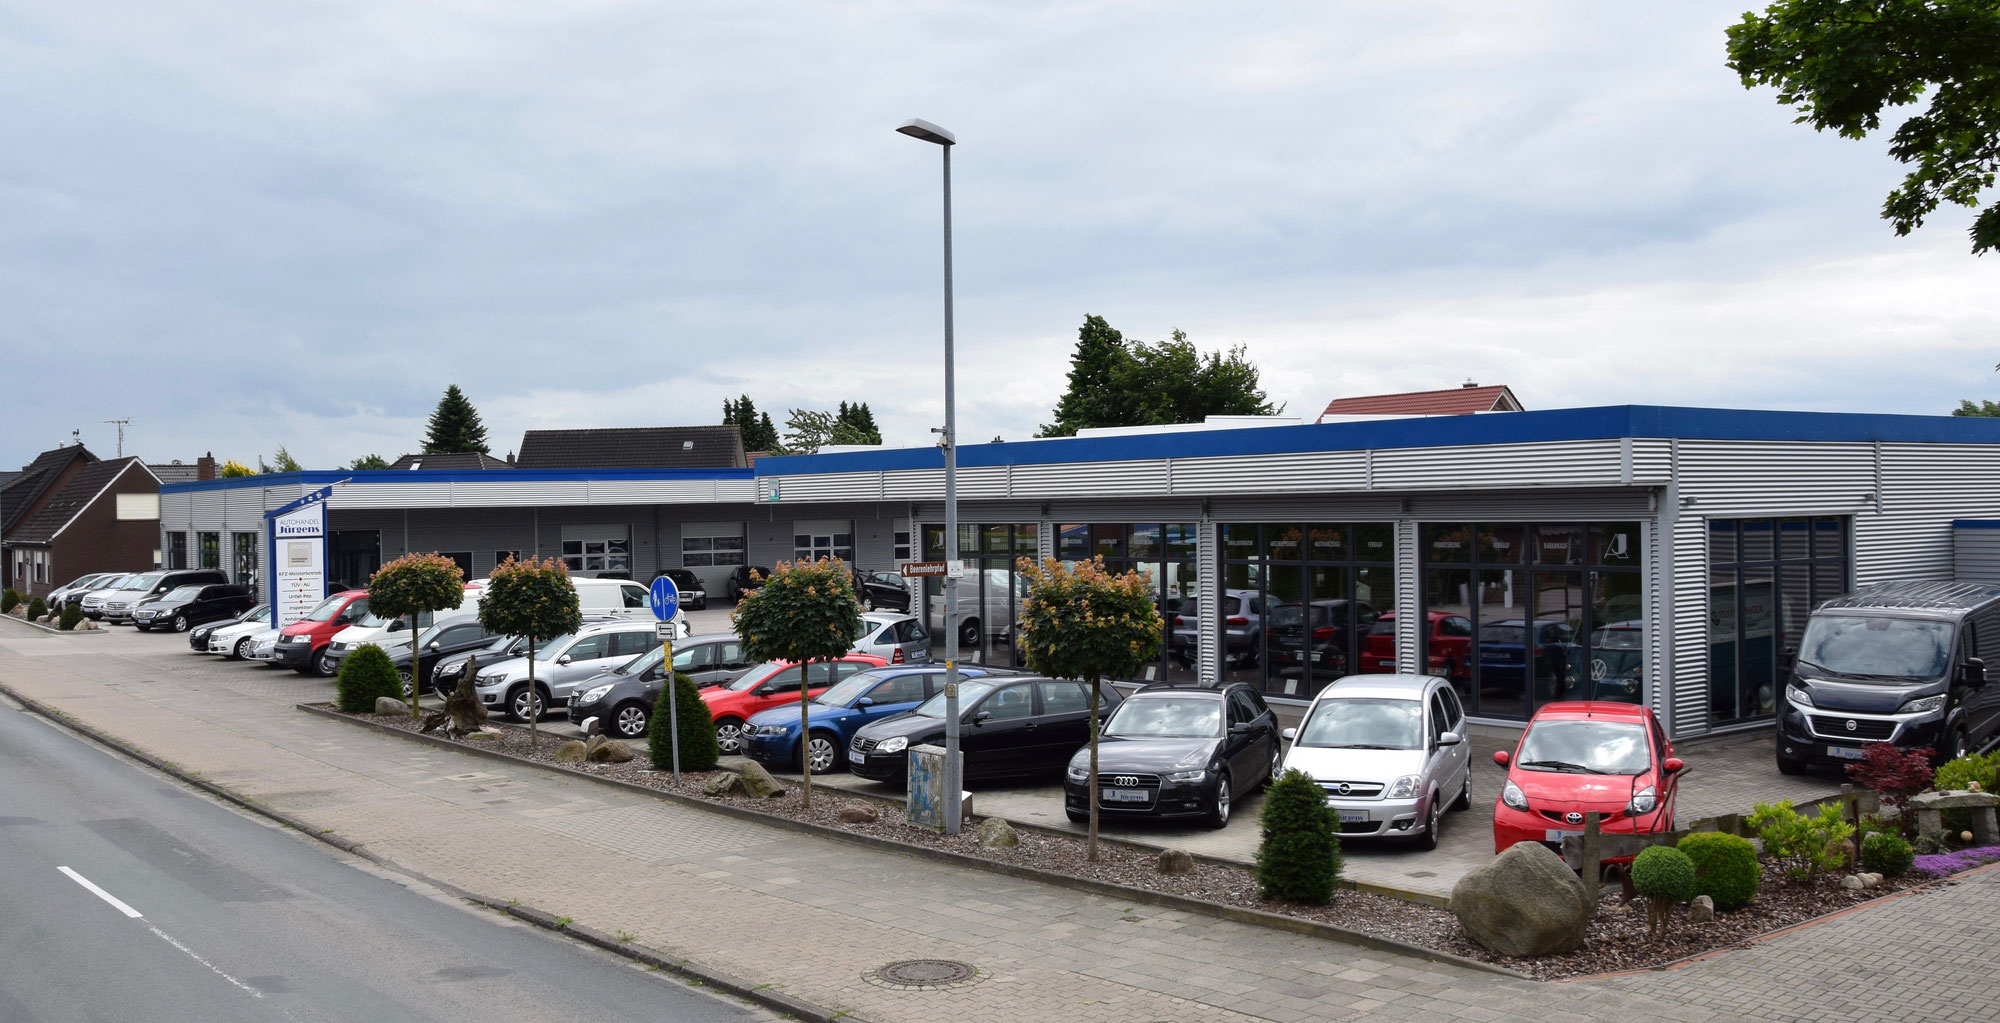 (c) Autohandel-juergens.de